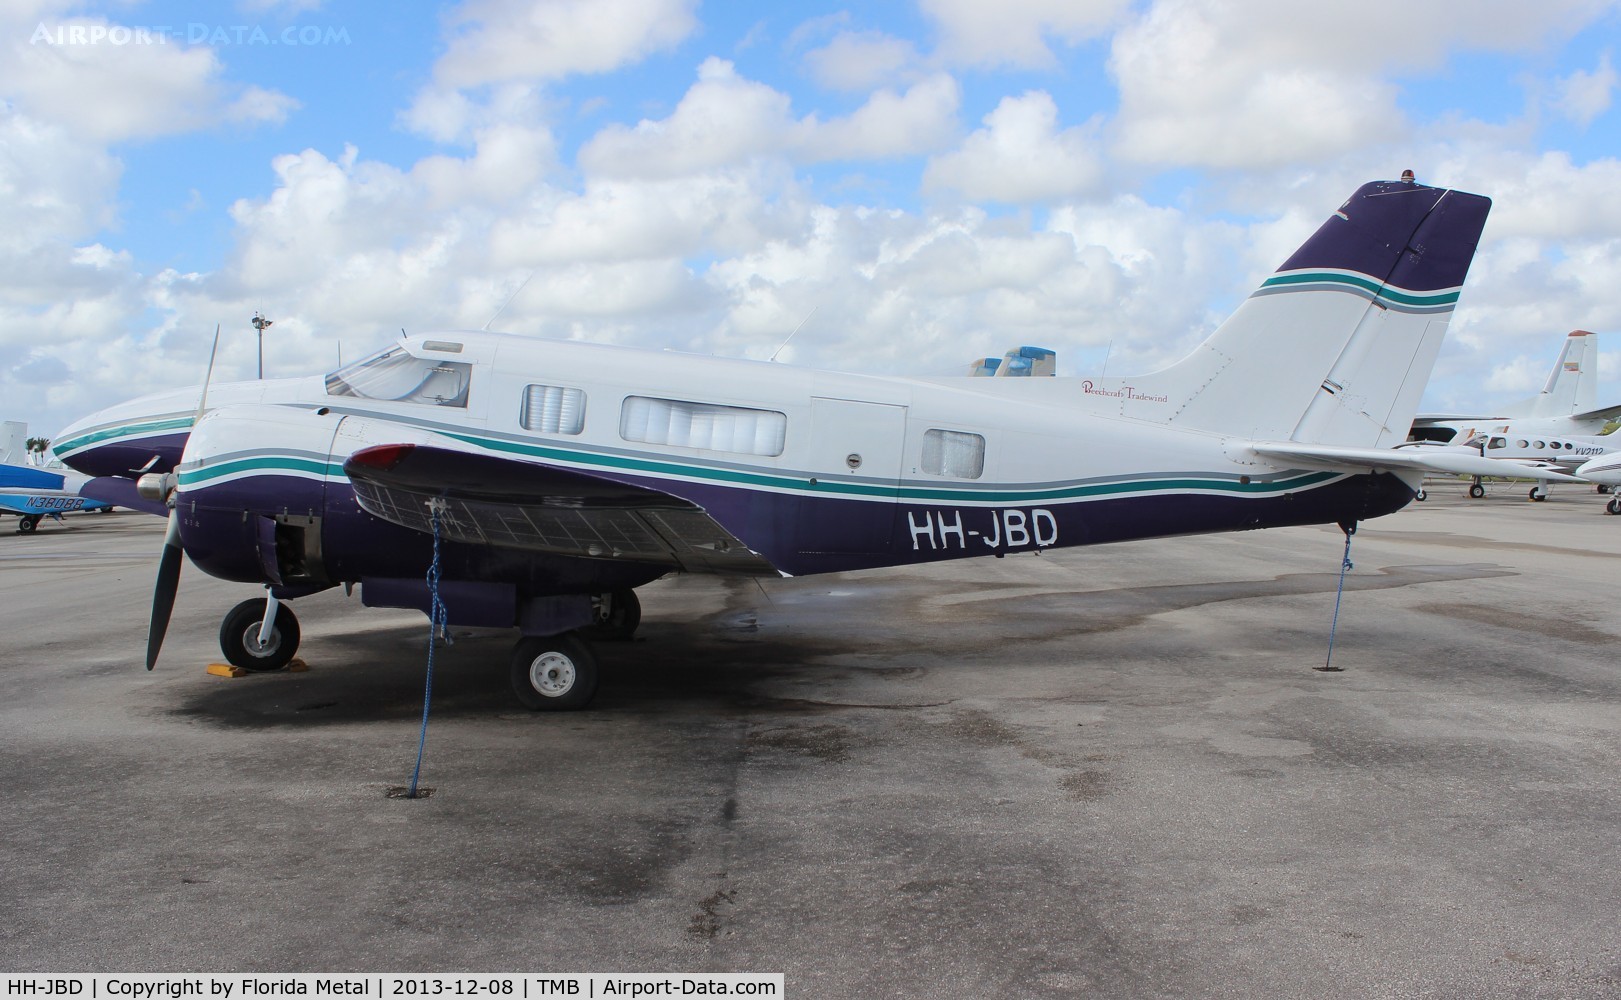 HH-JBD, Beechcraft JRB-6 C/N 4437, Beech JRB-6 tri gear single tail conversion